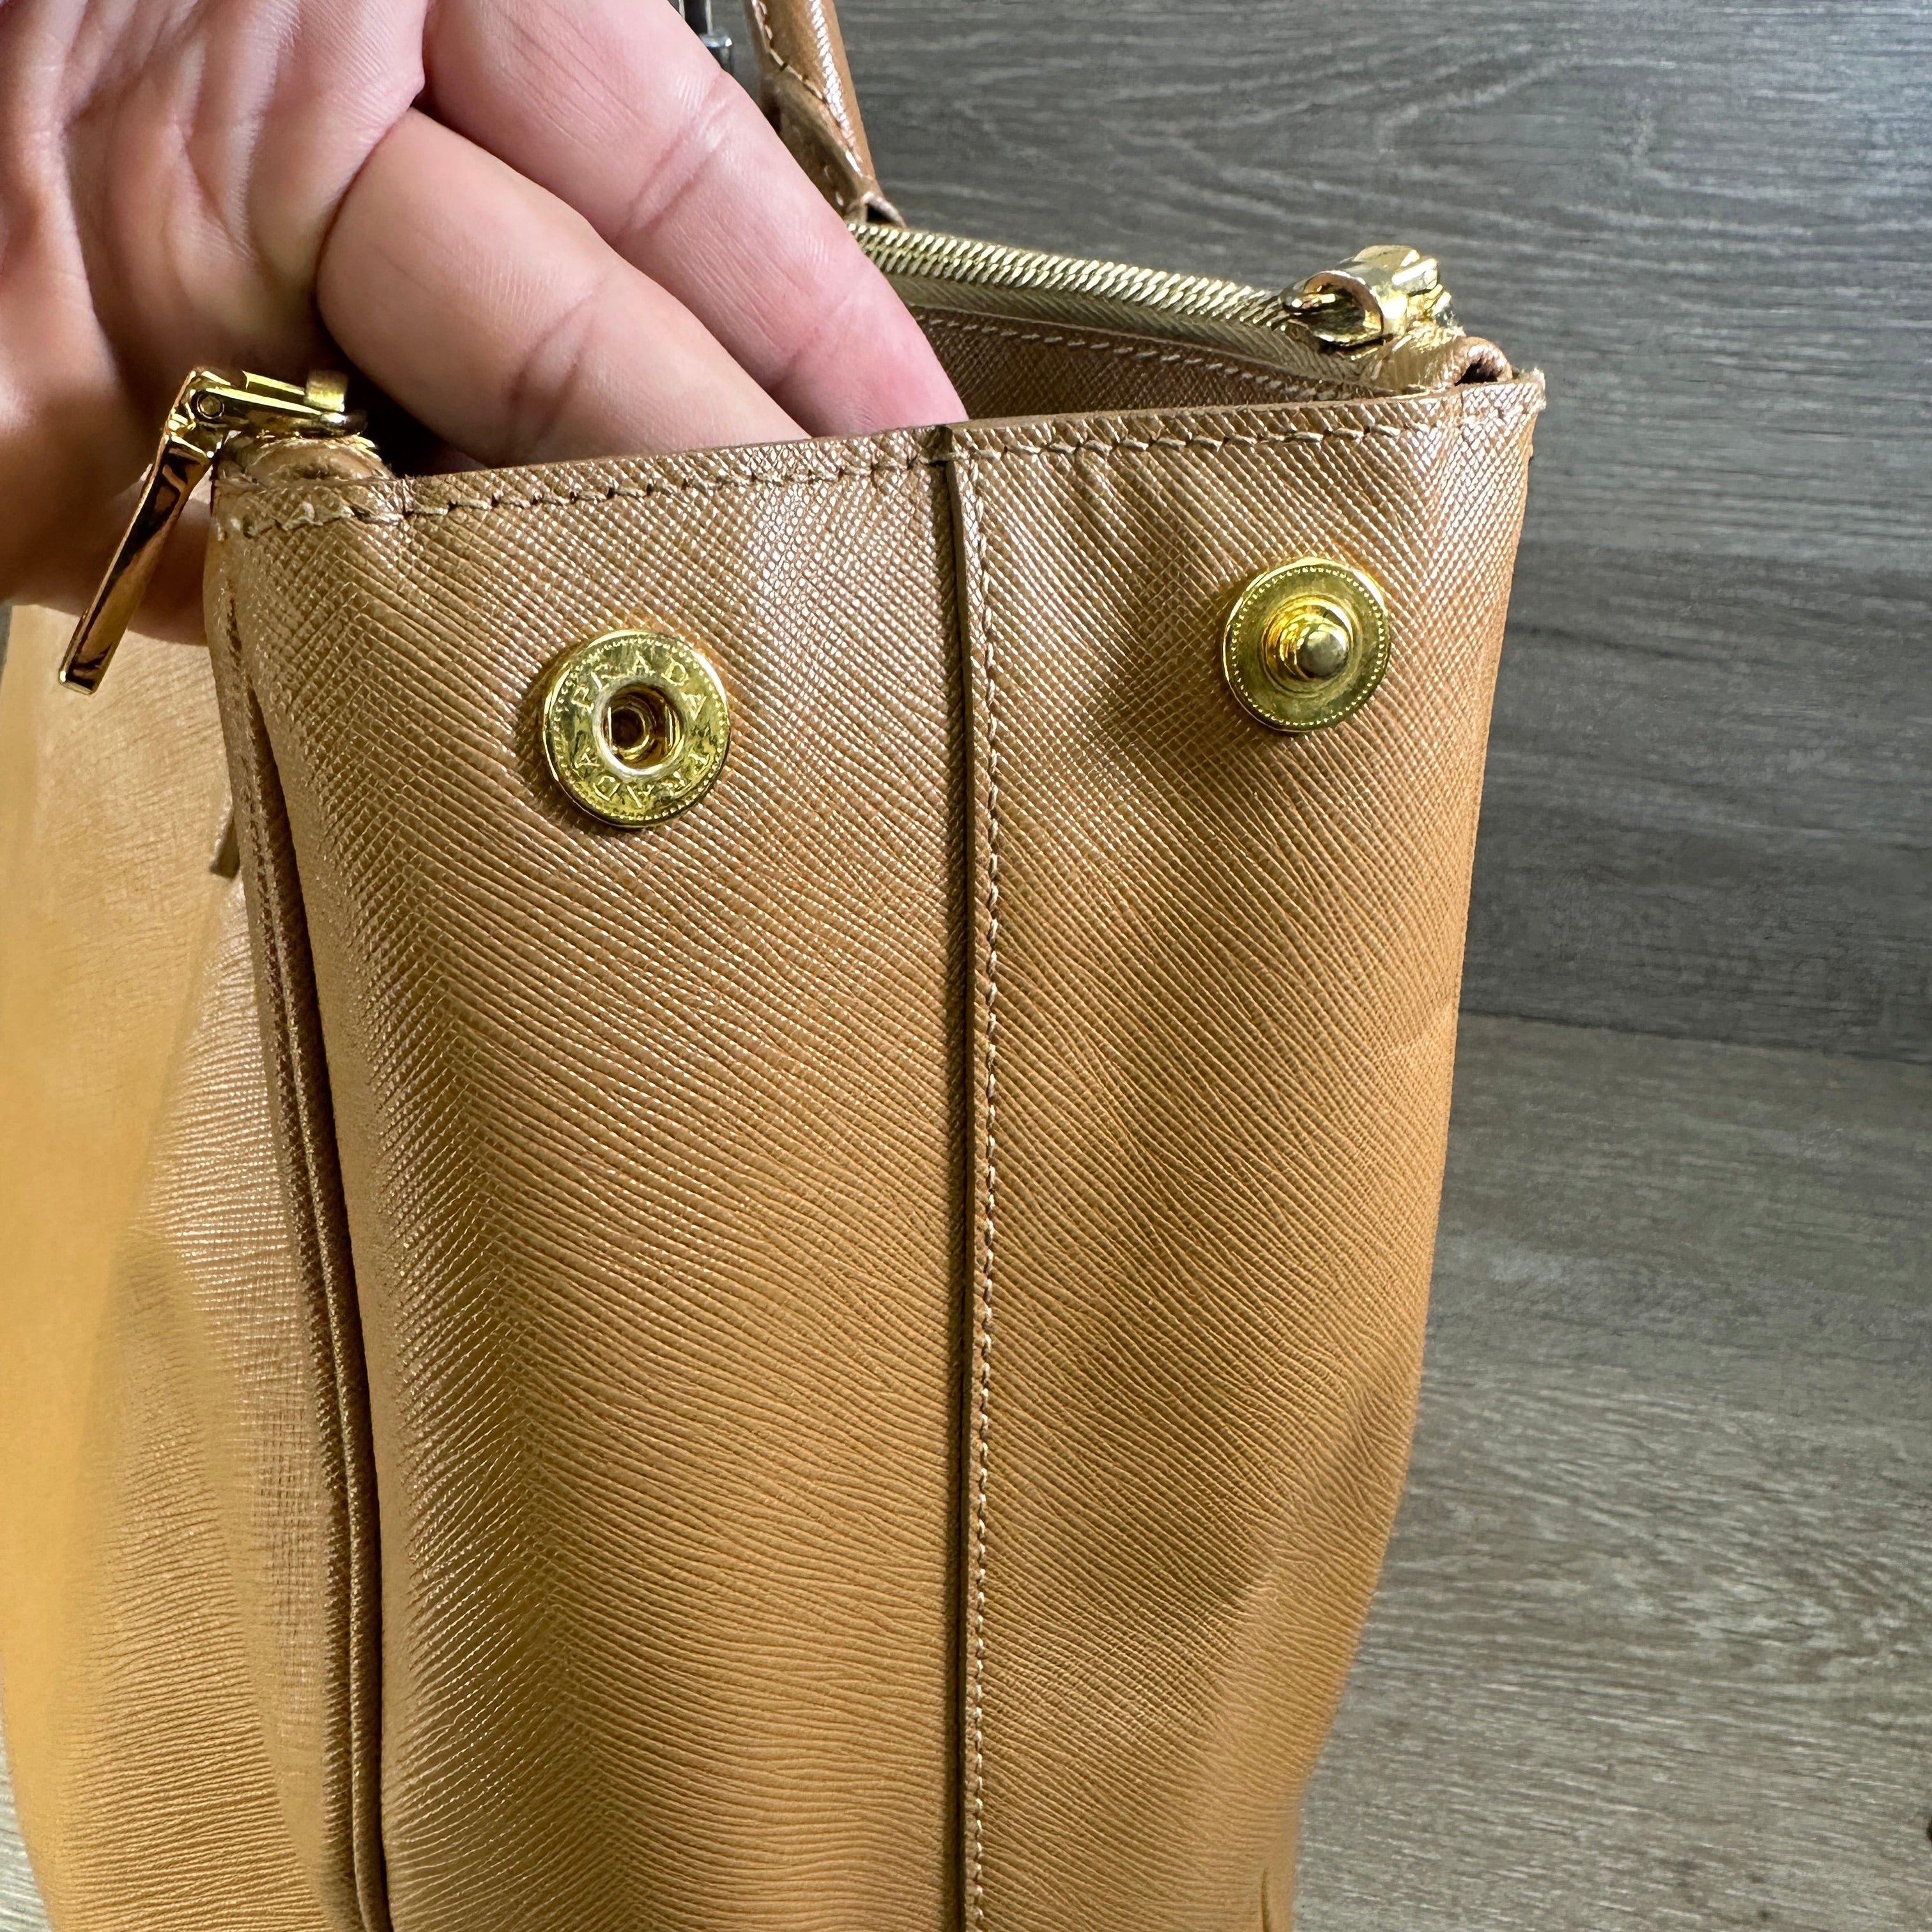 Authentic Prada Galleria Saffiano Leather Bag